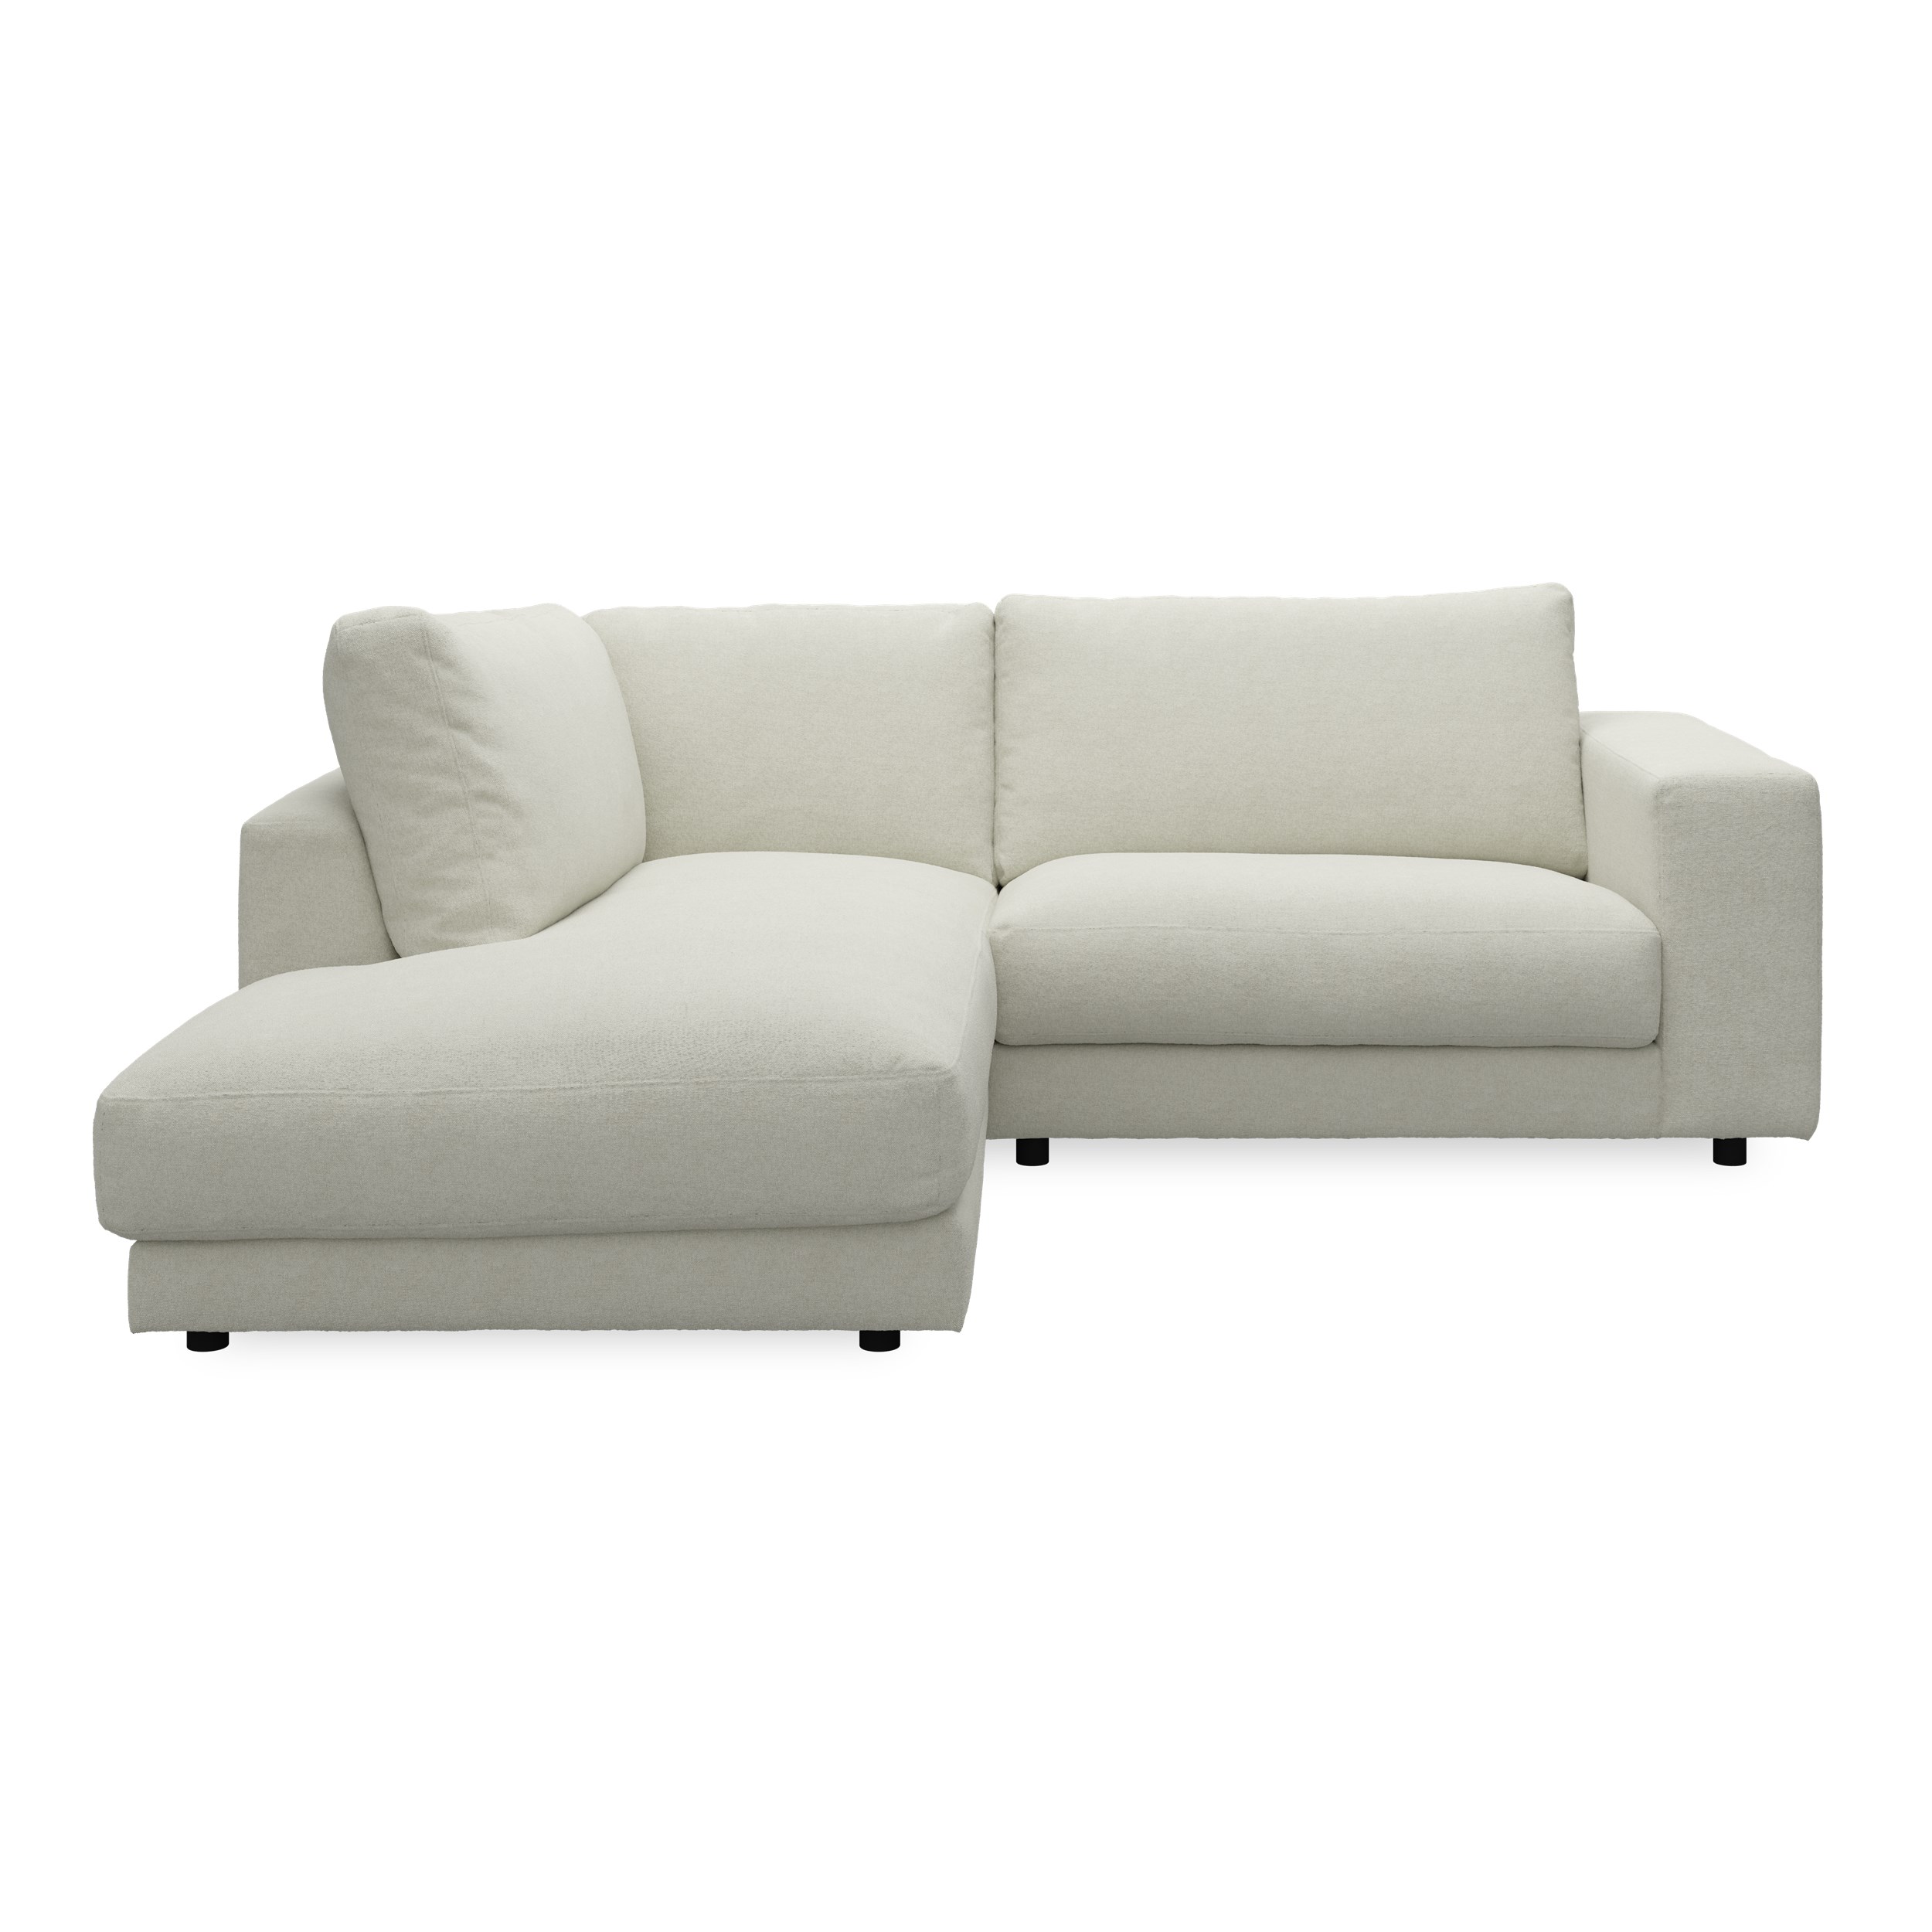 Bennent vänstervänd soffa med divan - Yelda Natur klädsel, ben i svart plast och S:skum/fib/din/sili R:Dun/skum